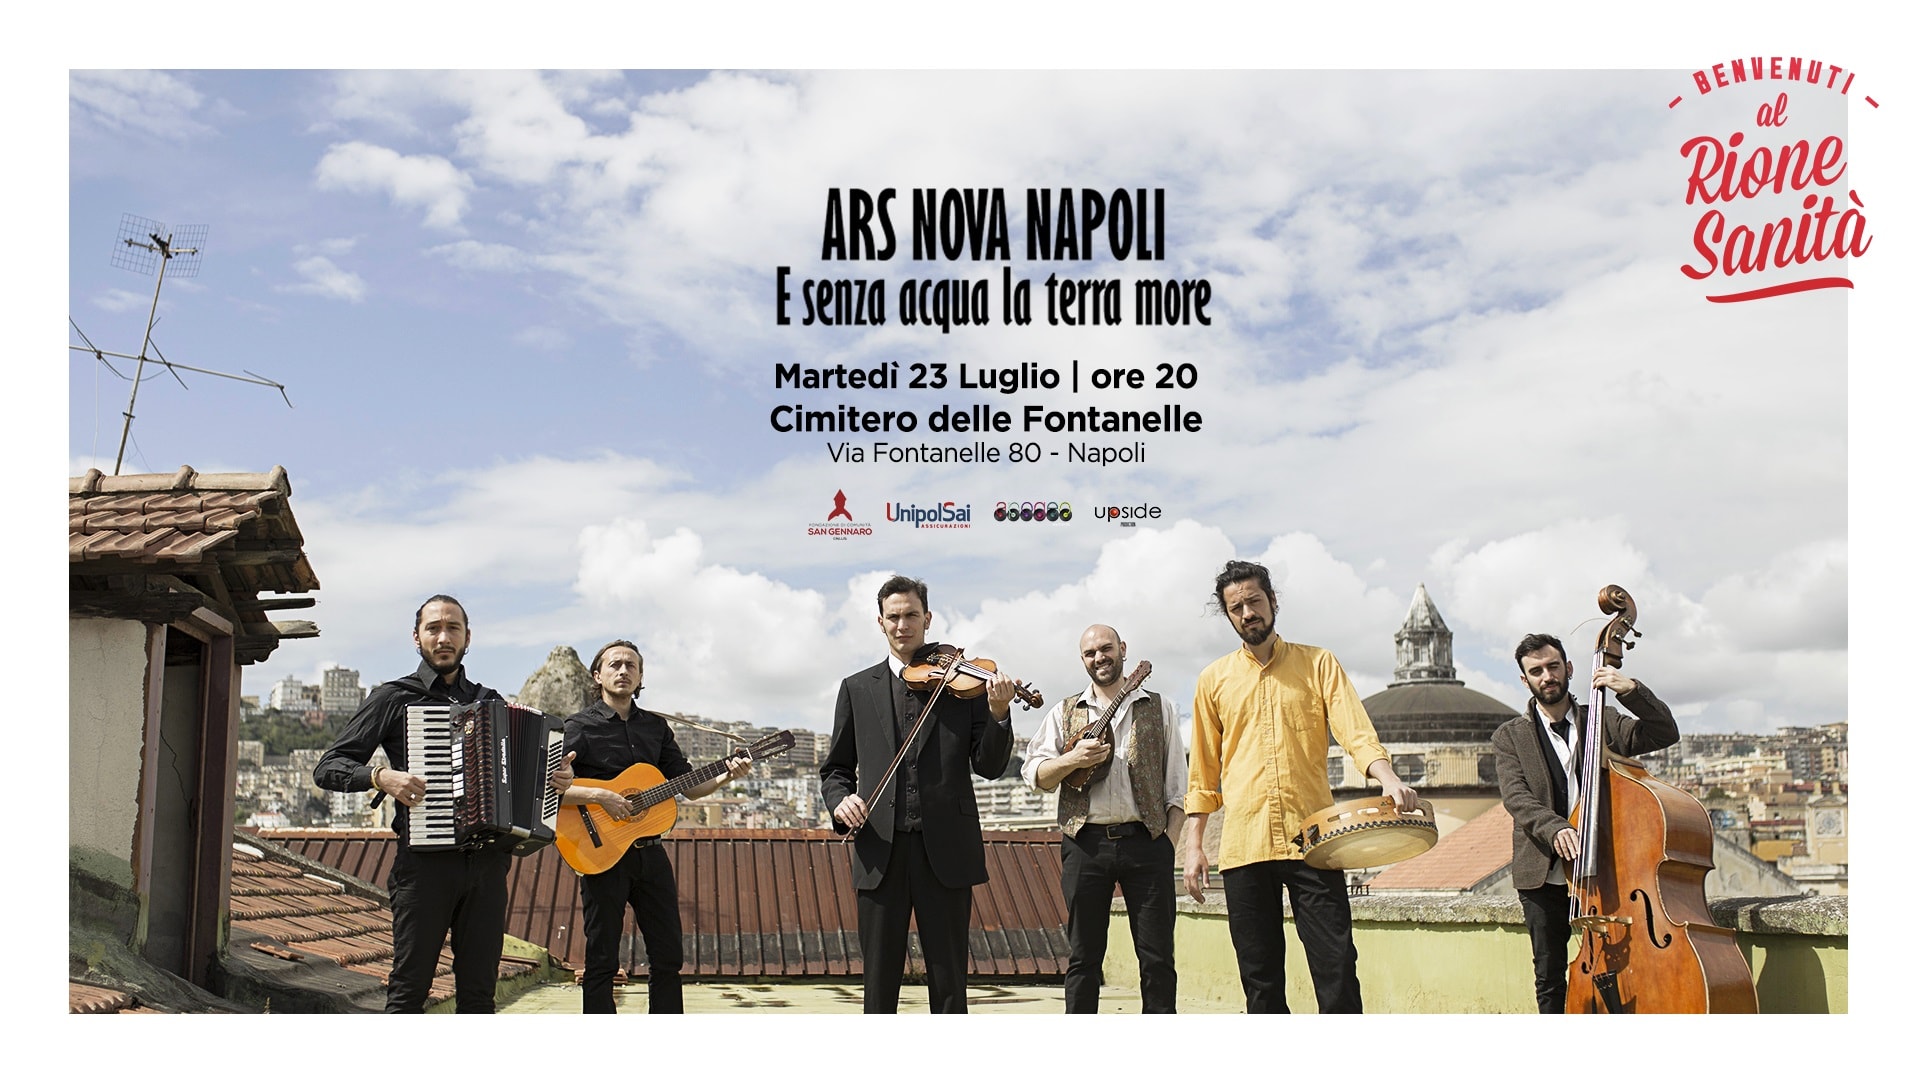 Ars nova Napoli in concerto al cimitero delle Fontanelle per ‘Bvenuti al Rione Sanità’